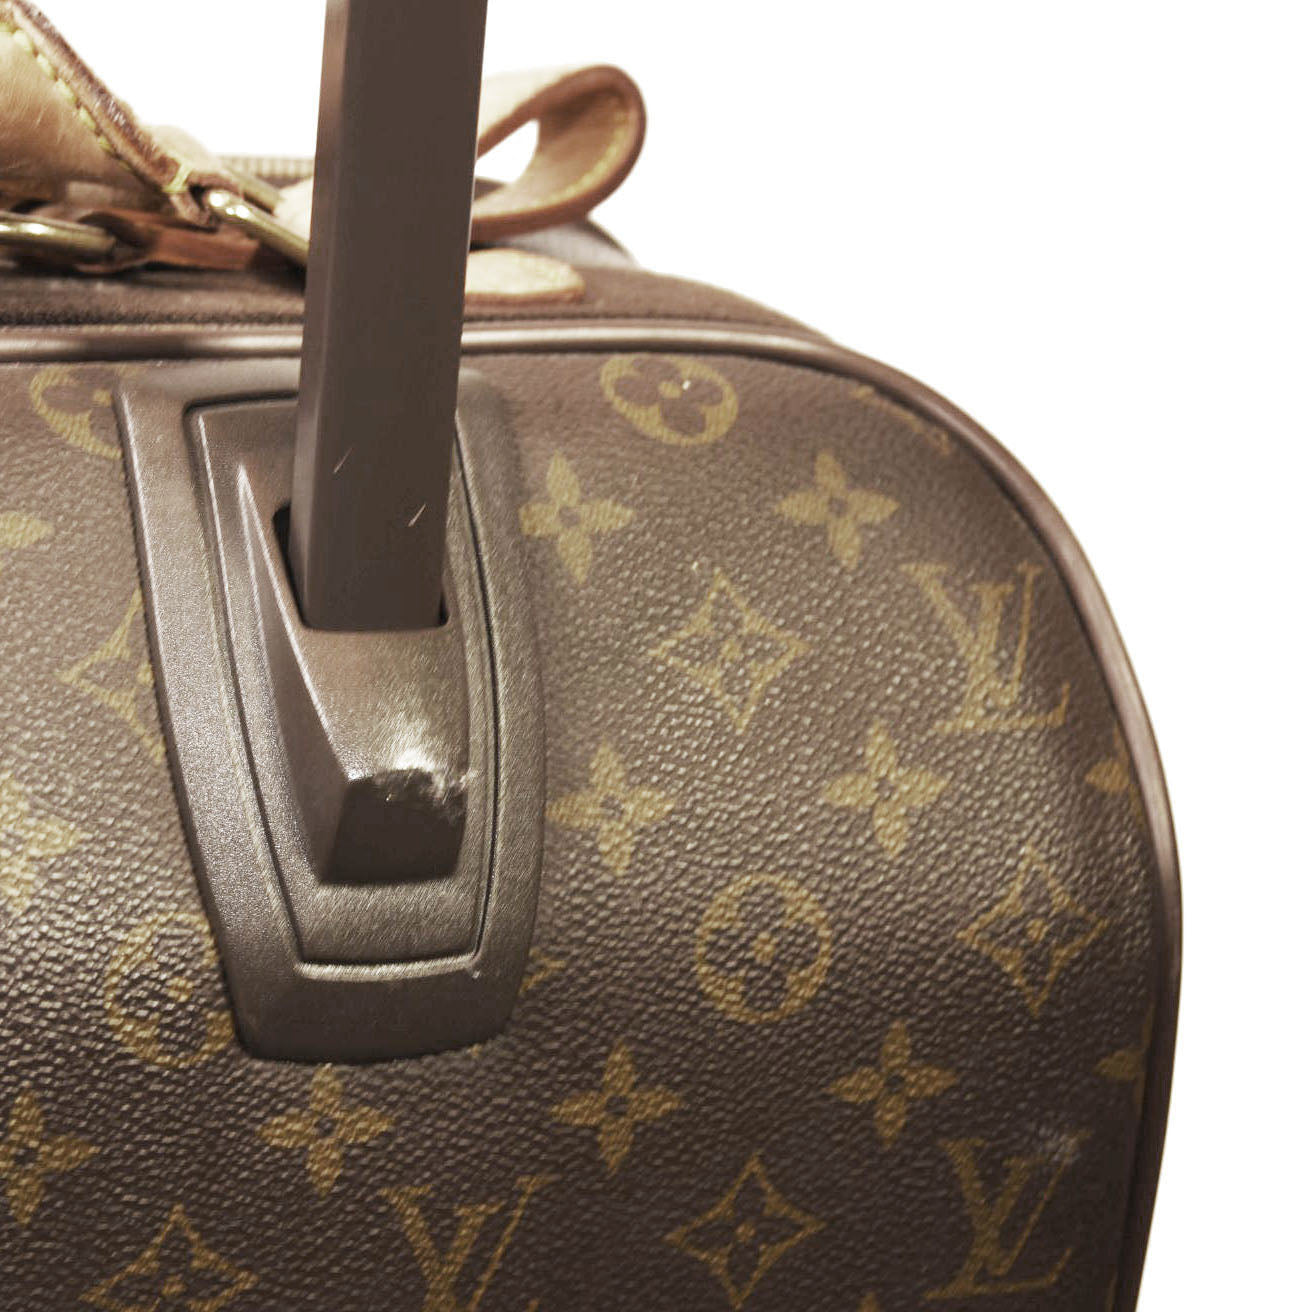 Louis Vuitton Monogram Canvas Pegase 55 Business Suitcase